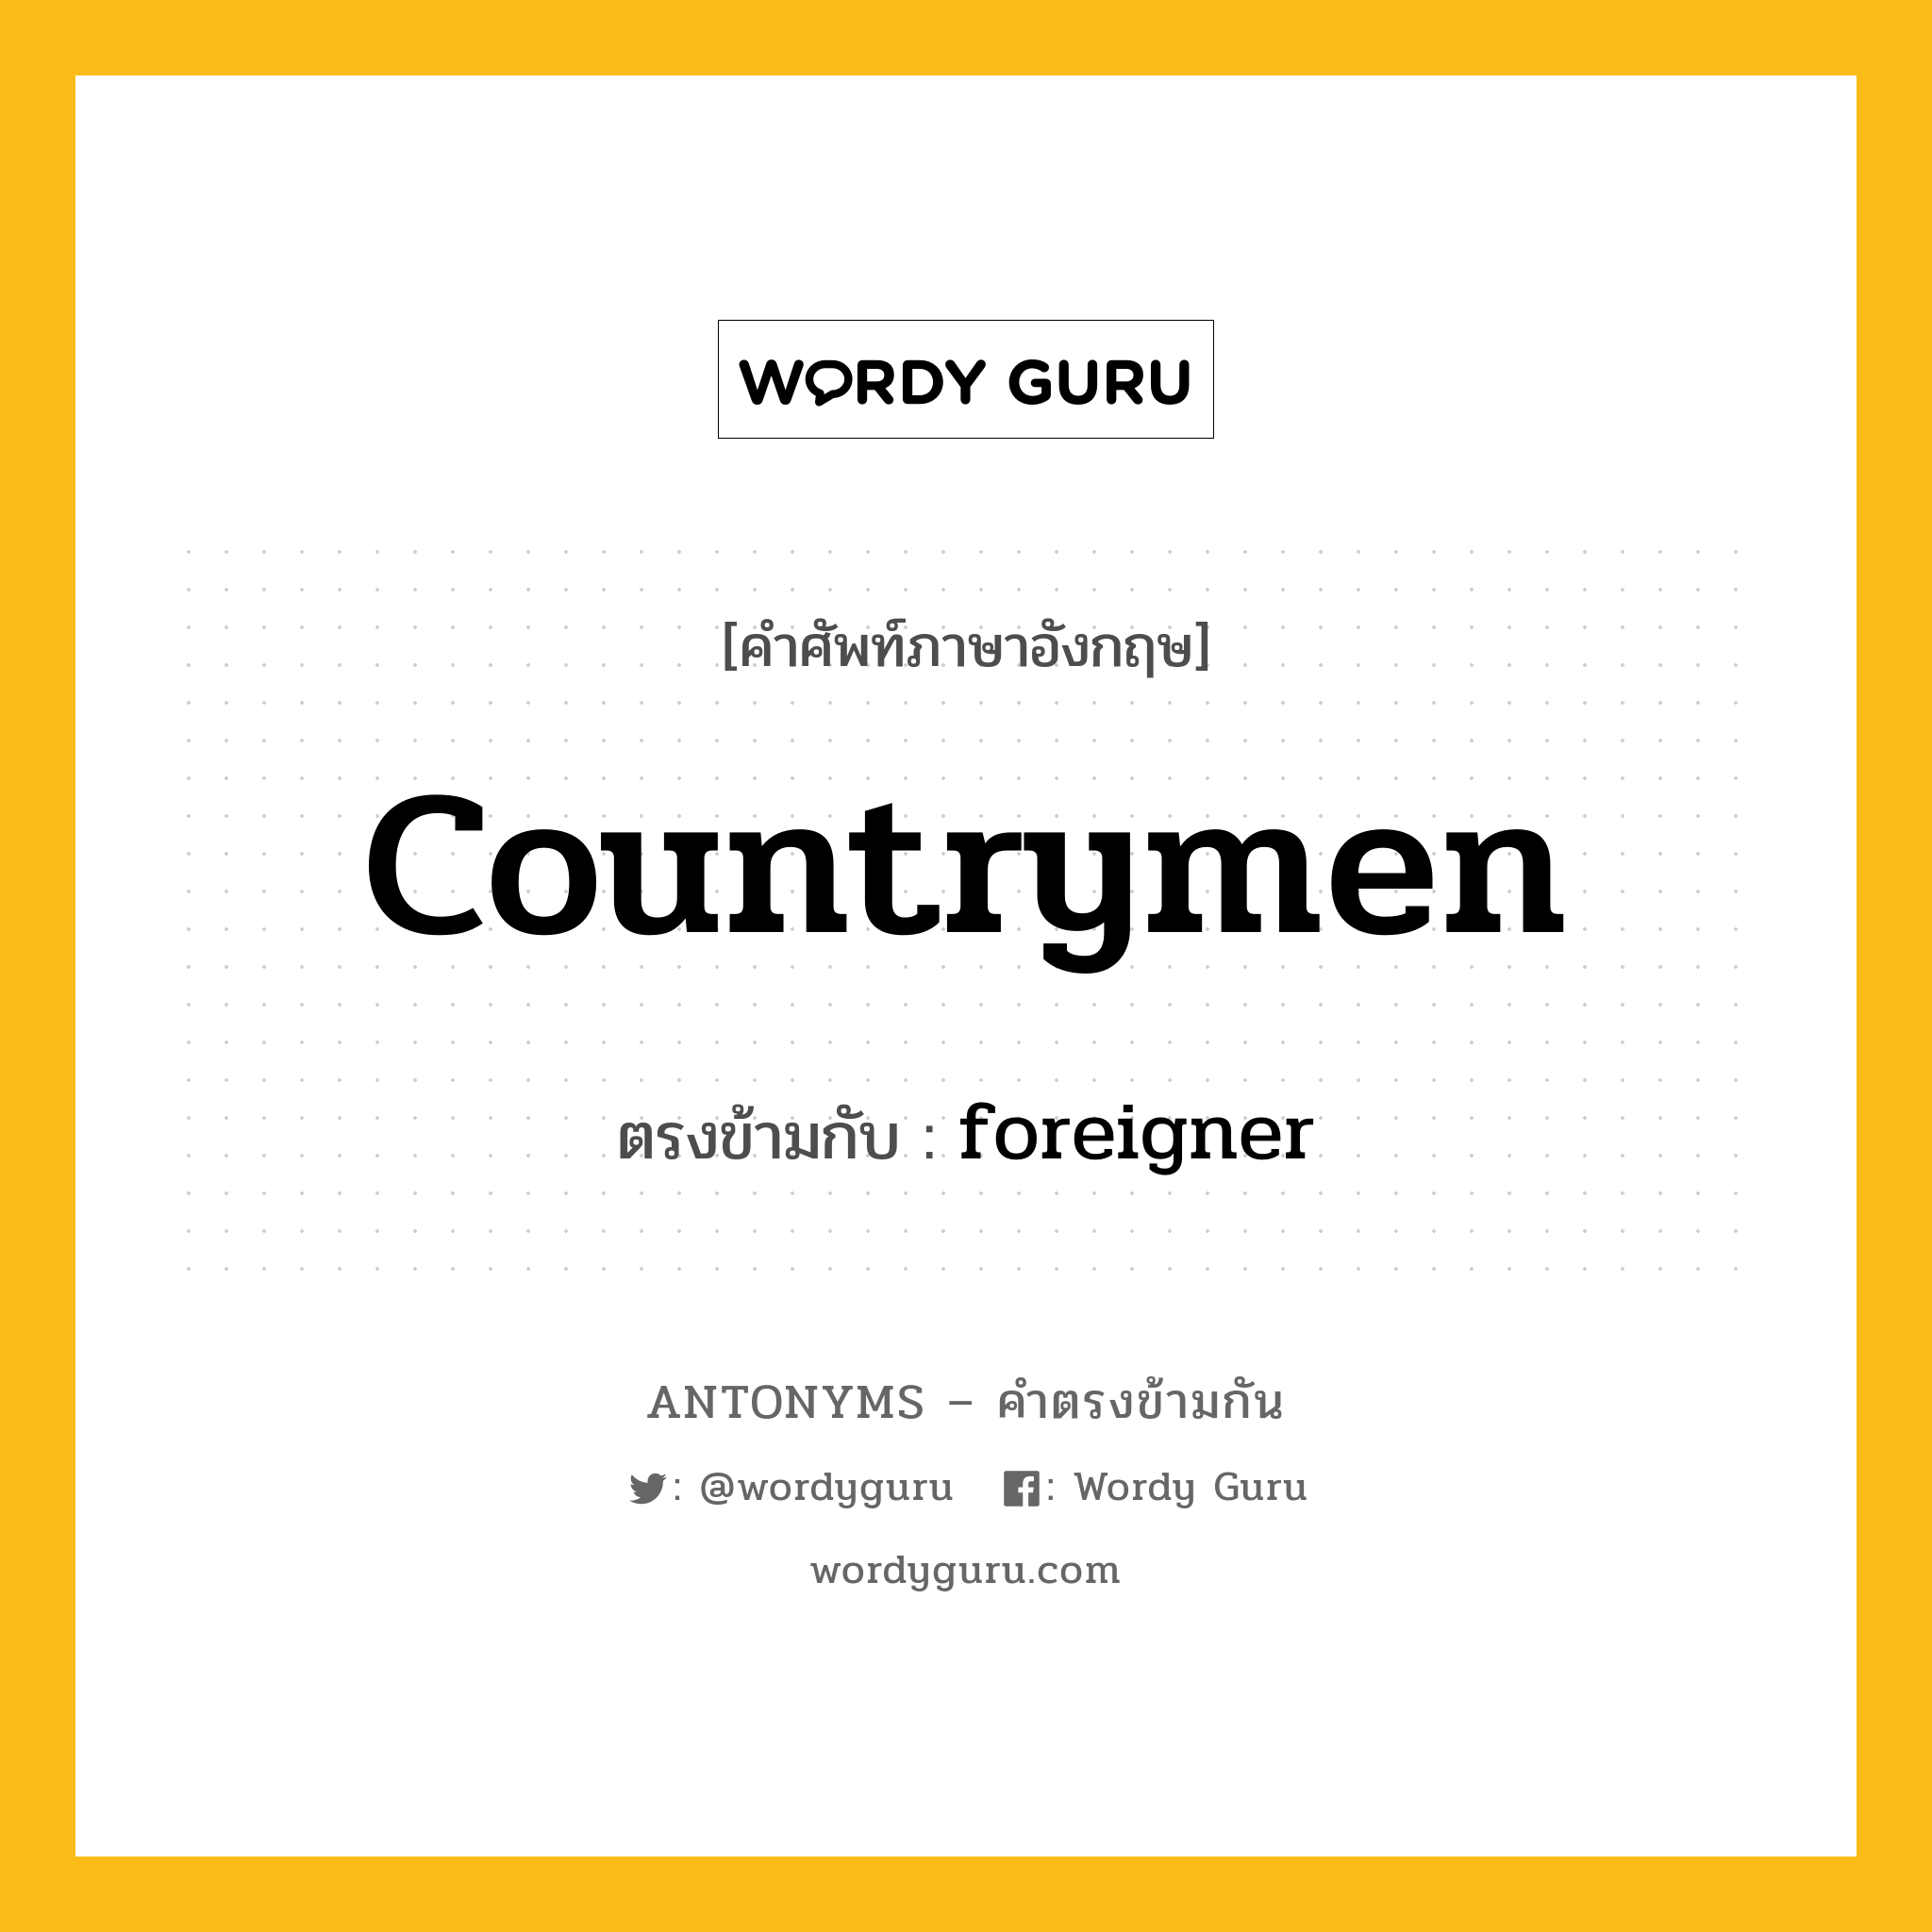 countrymen เป็นคำตรงข้ามกับคำไหนบ้าง?, คำศัพท์ภาษาอังกฤษ countrymen ตรงข้ามกับ foreigner หมวด foreigner